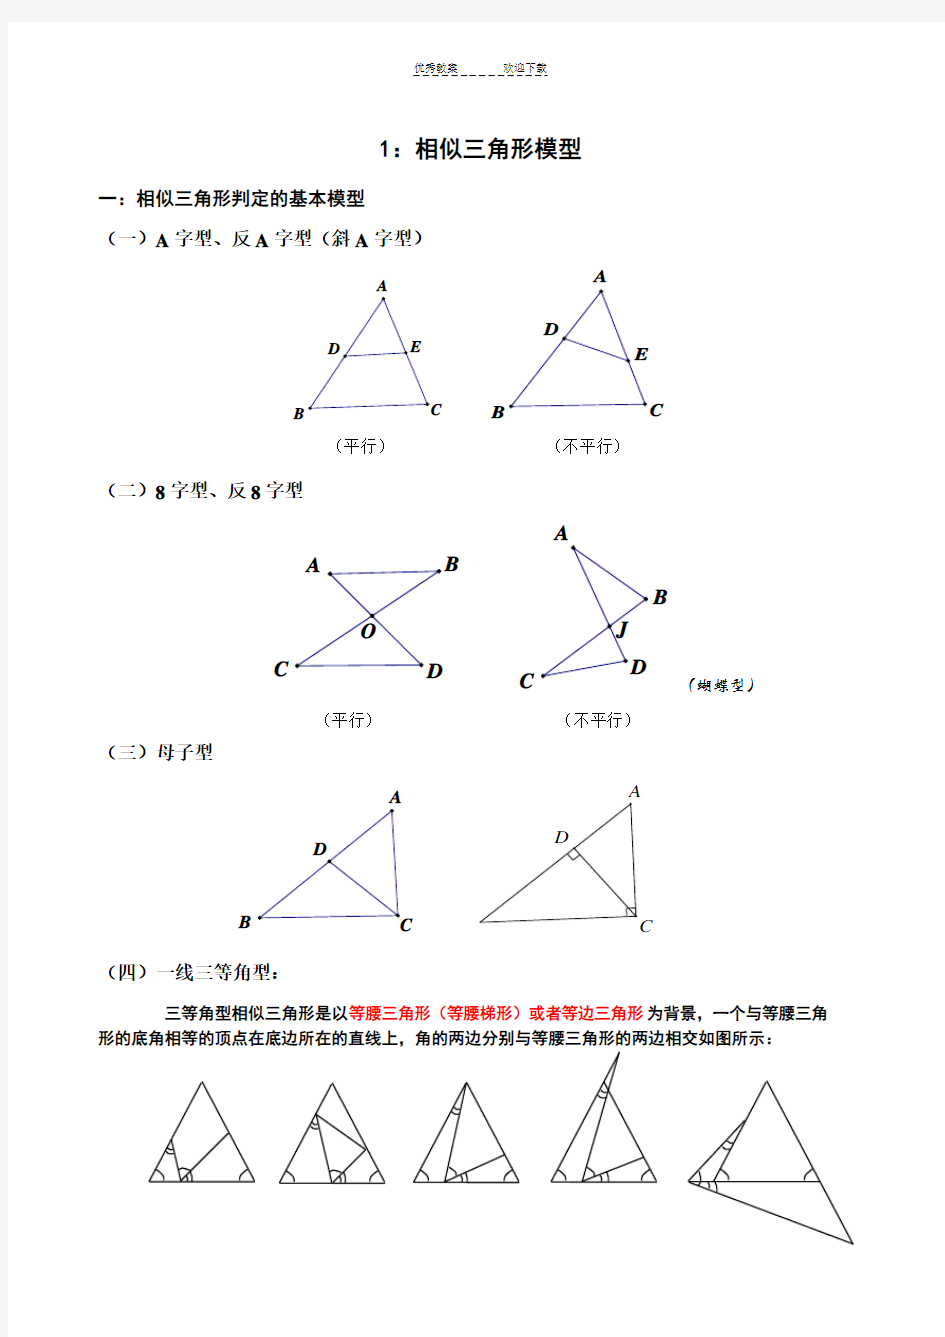 相似三角形典型模型及例题